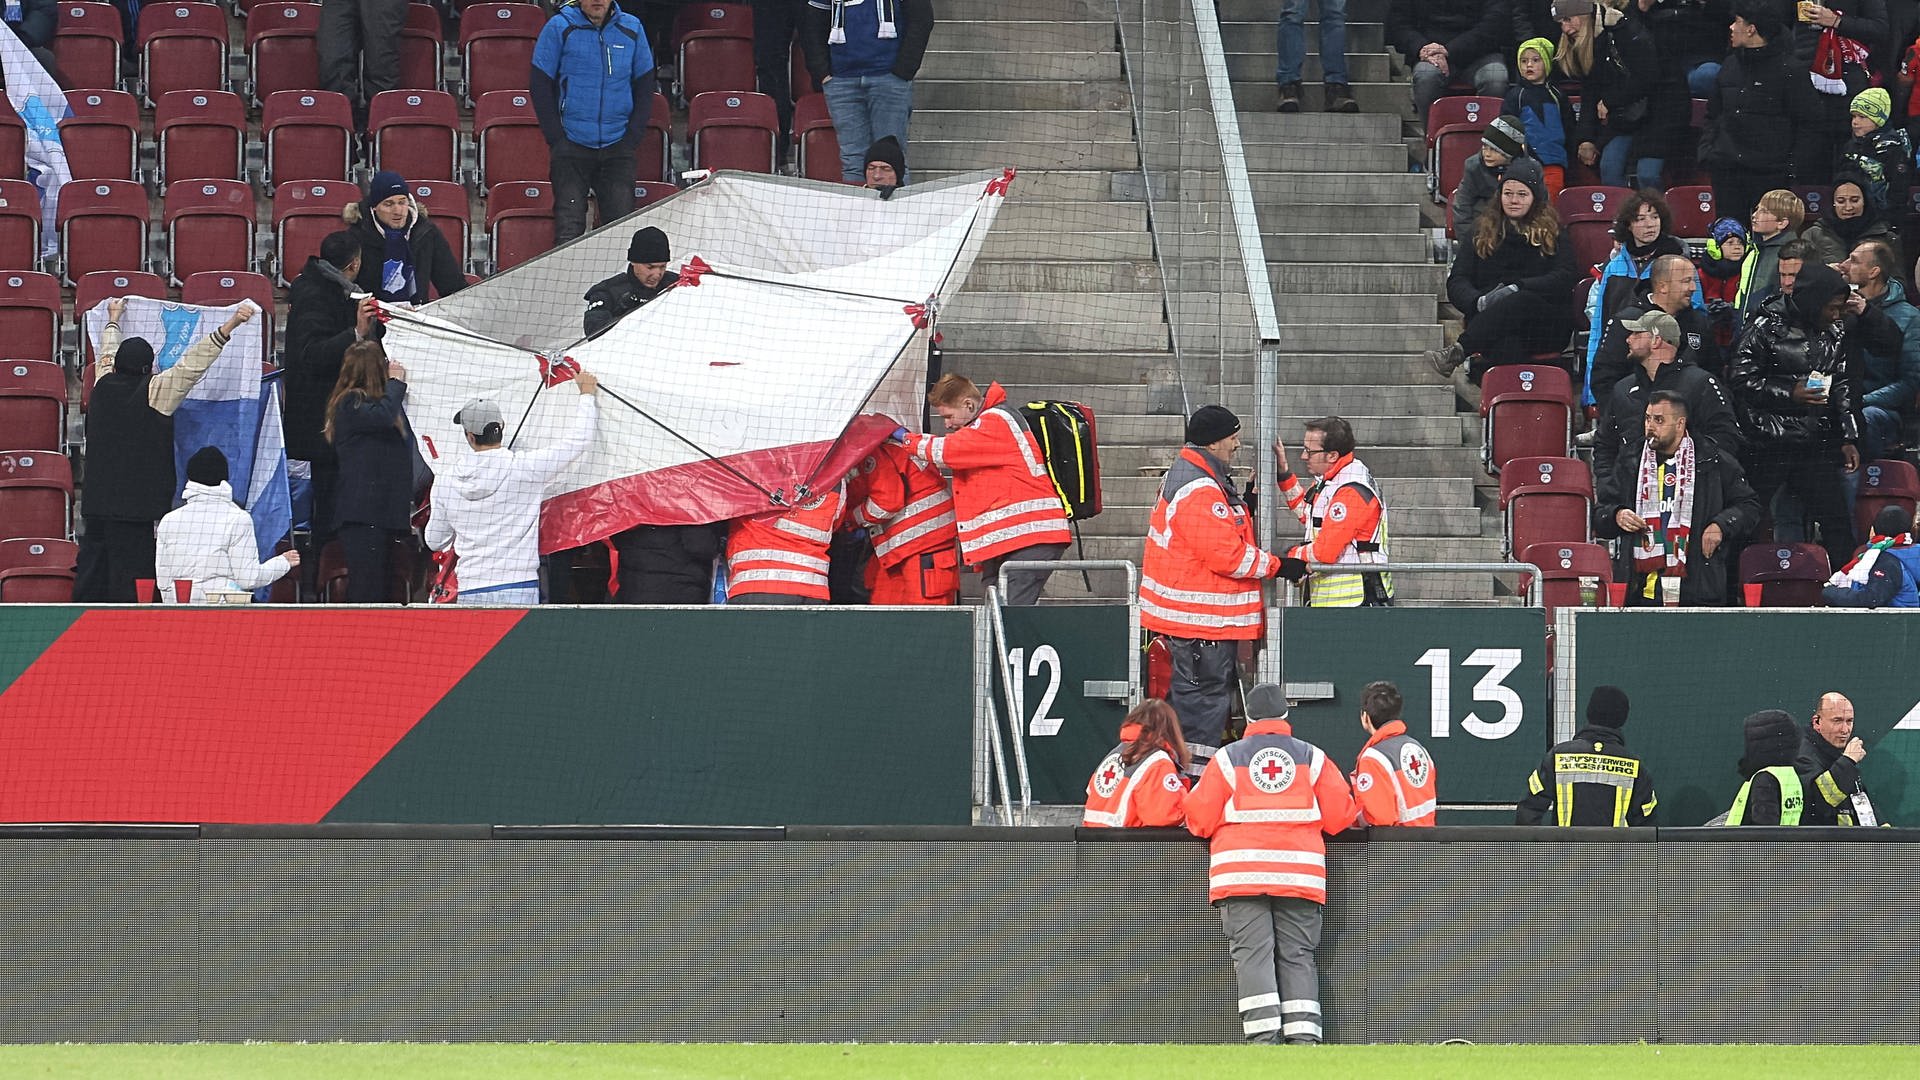 Prozess um Stadion-Böllerwurf mit 14 Verletzten ausgesetzt